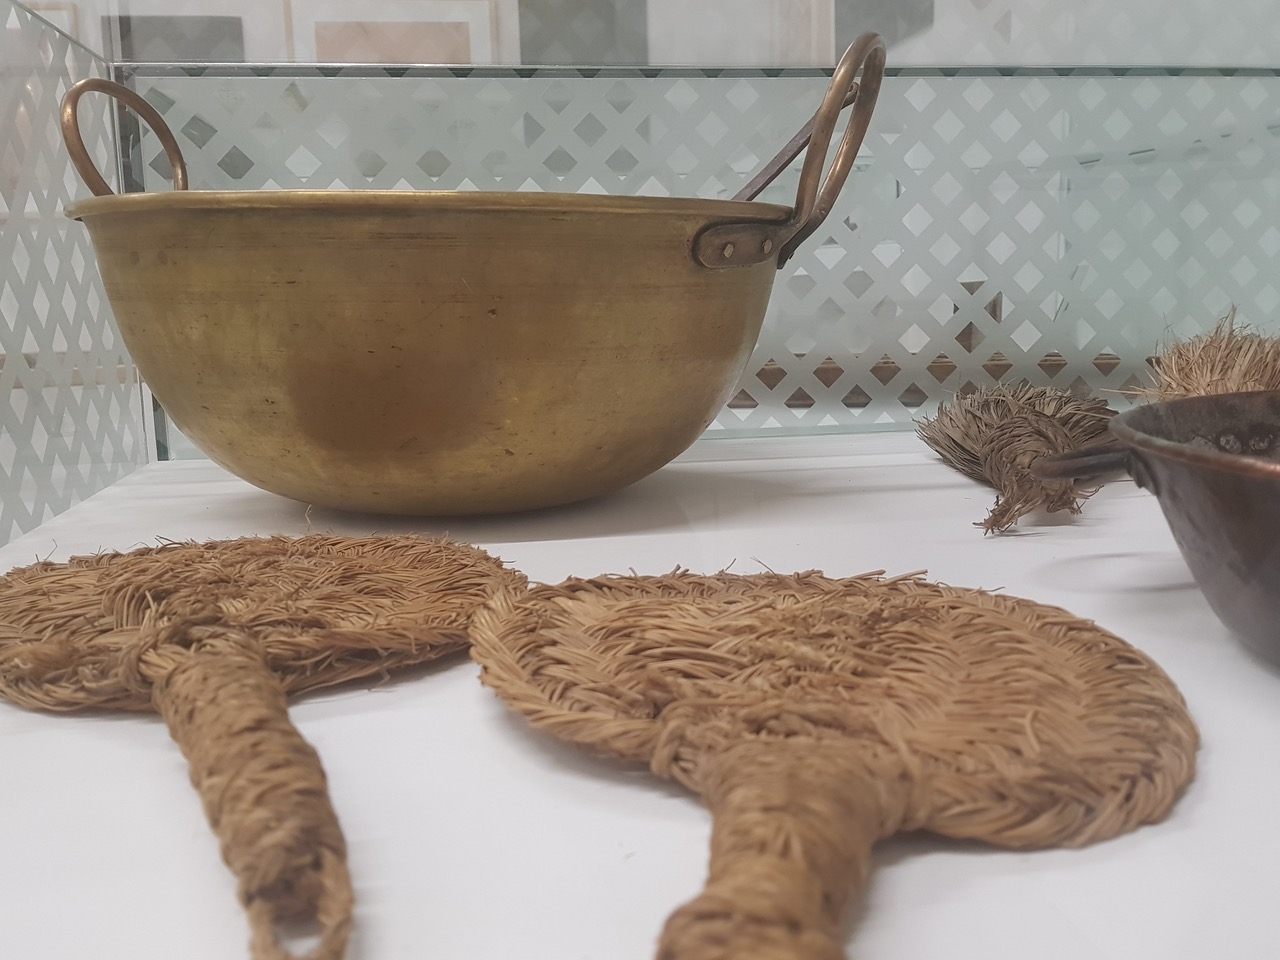  ‘Manos de Santa: utensilios de repostería conventual en el Albayzín y el Realejo’, nueva exposición en el Palacio del Almirante